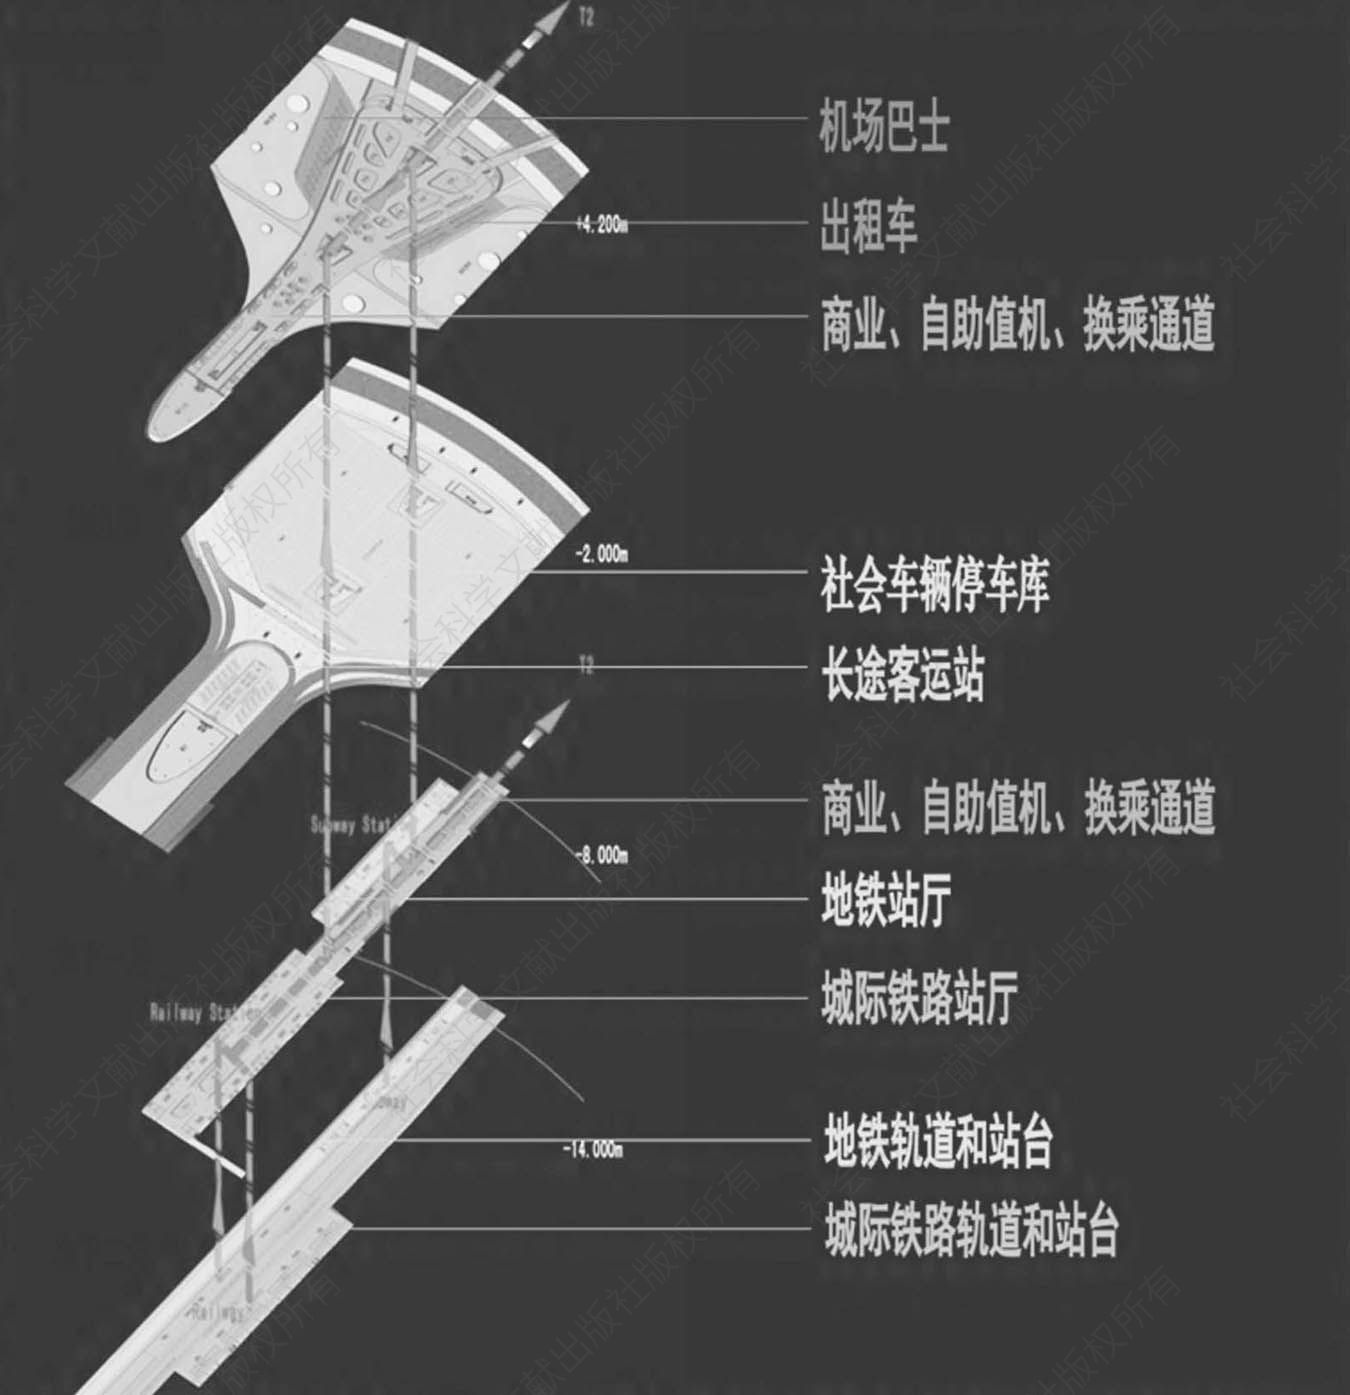 图1-3 郑州机场综合交通换乘中心分层示意